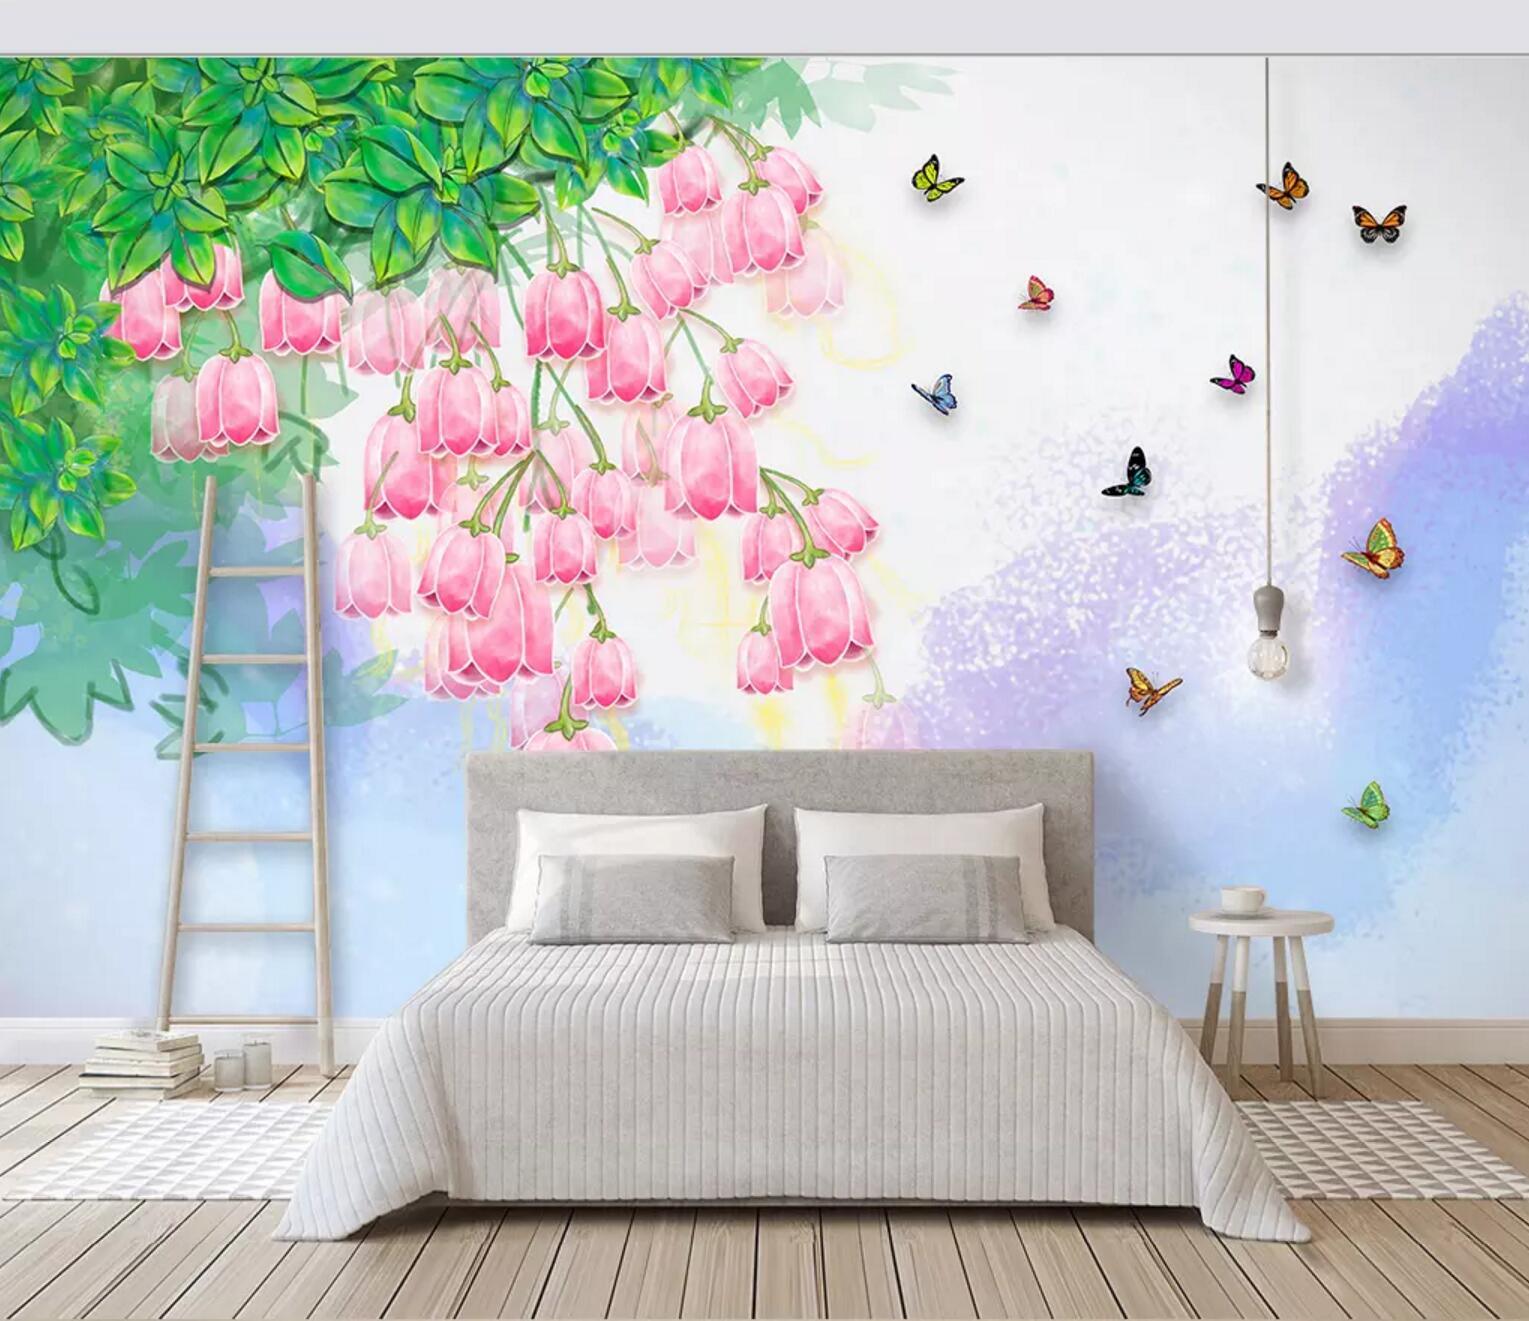 3D pink flowers wall mural wallpaper 482- Jess Art Decoration